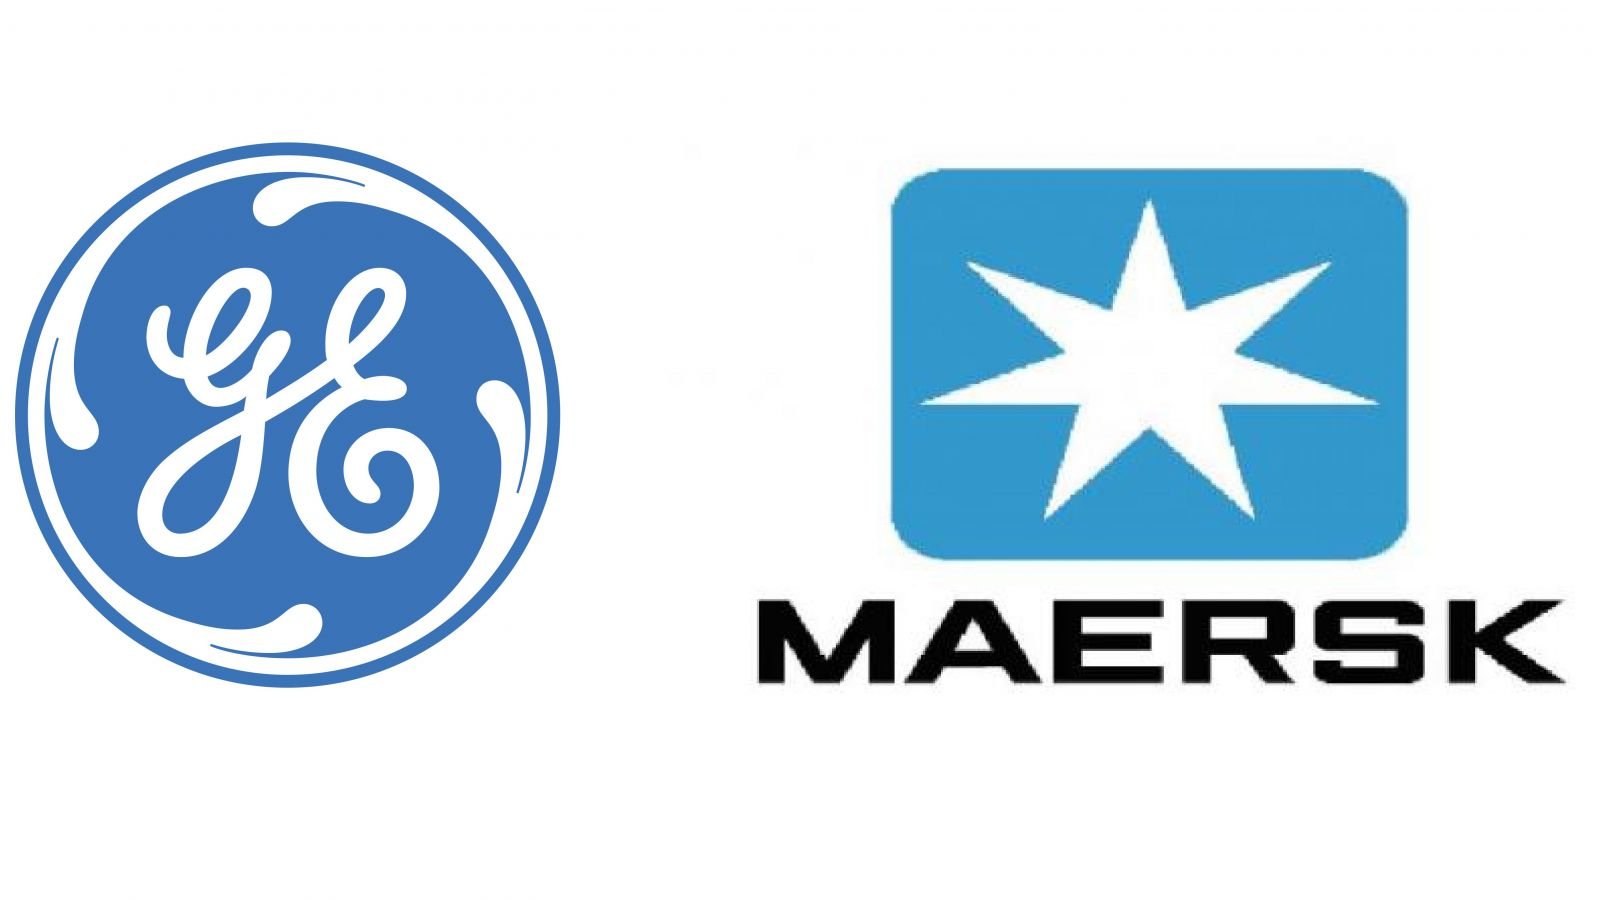 GE-Maersk logos